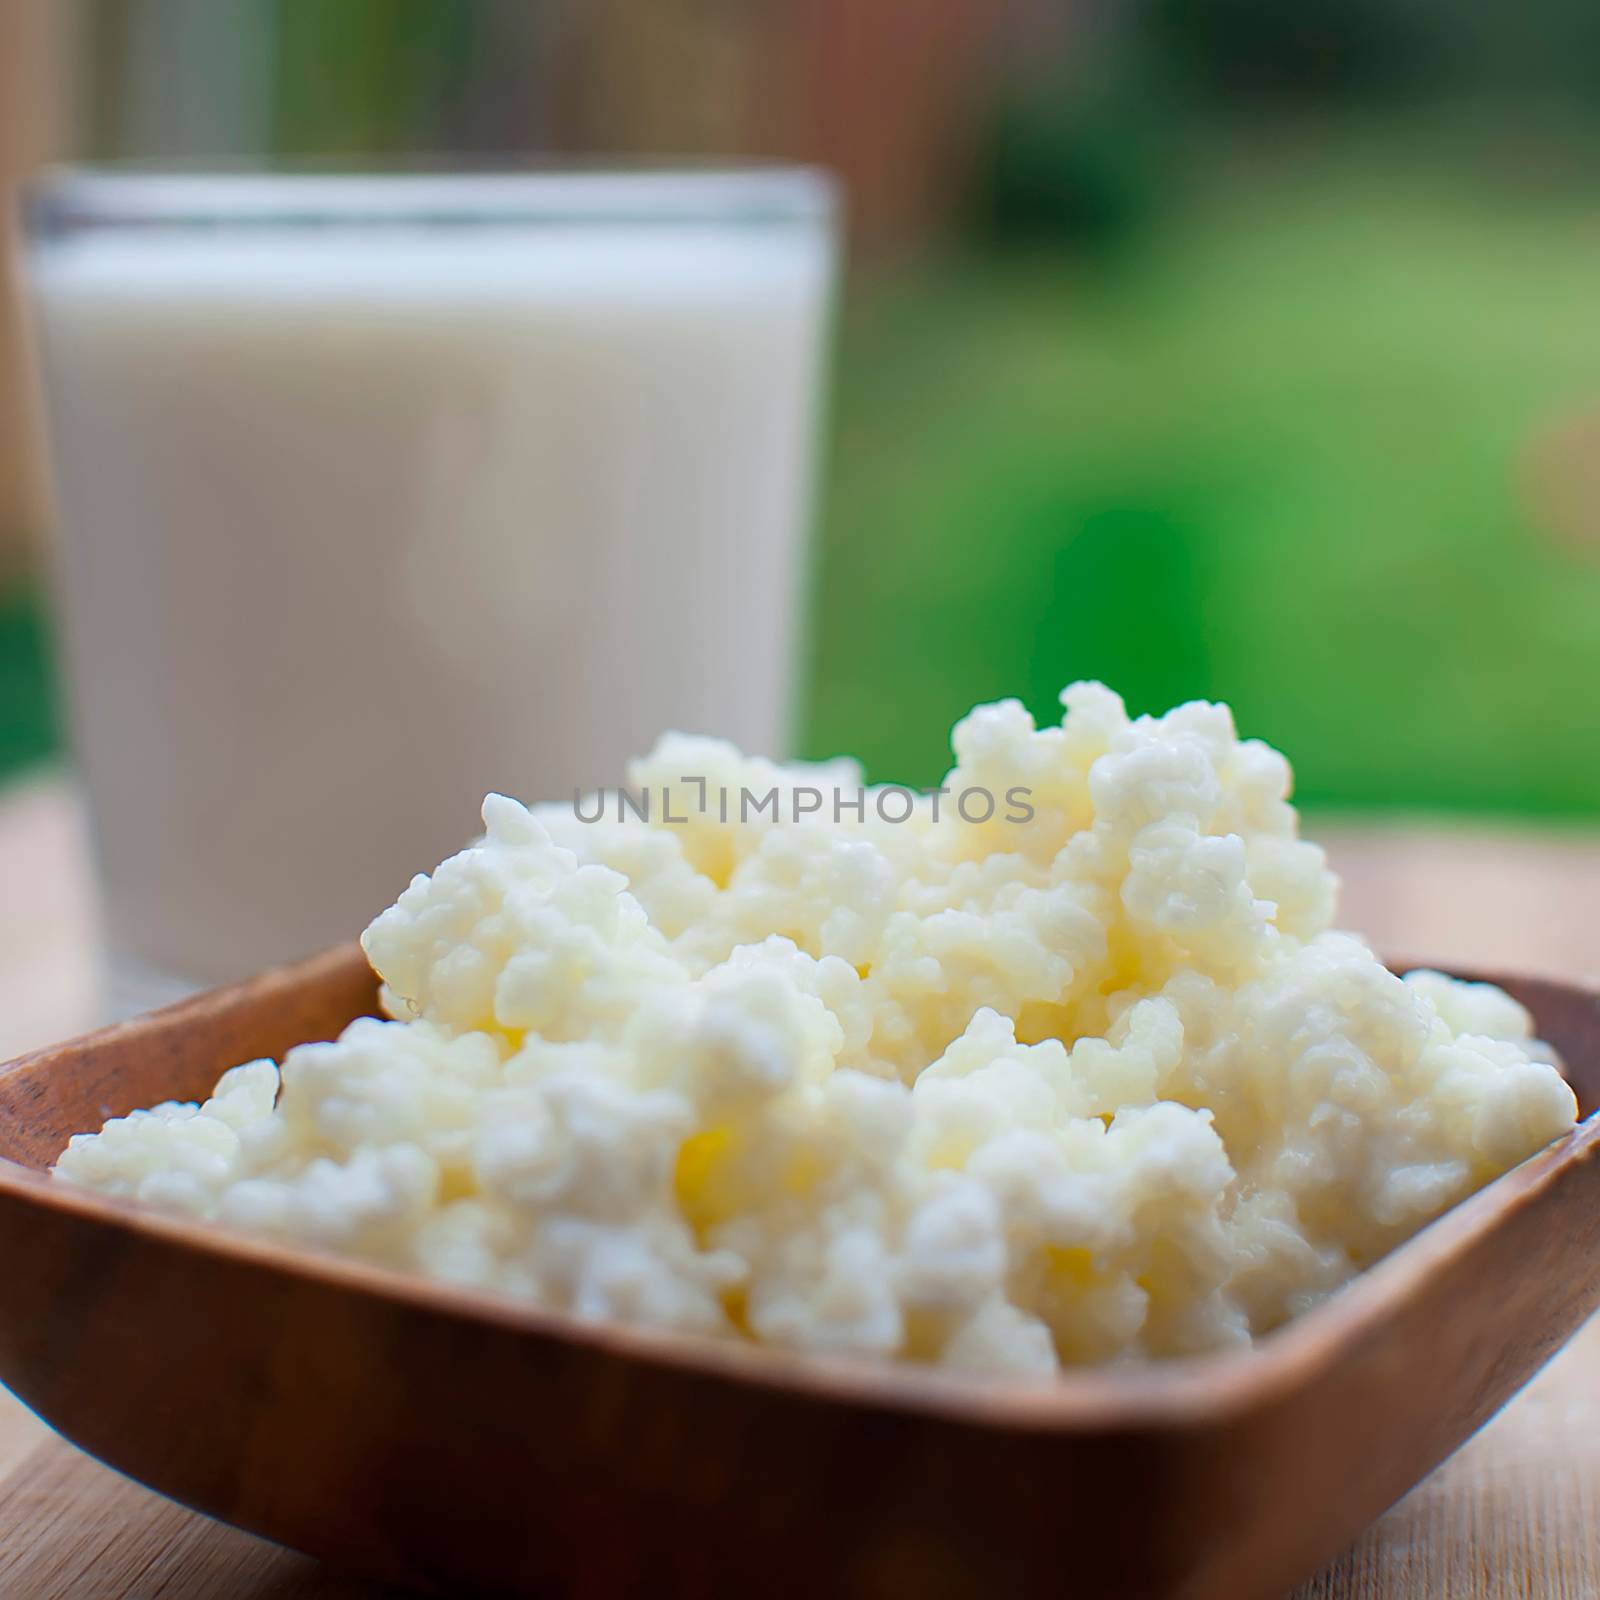 probiotic kefir drink made of milk and tibetan mushroom grains